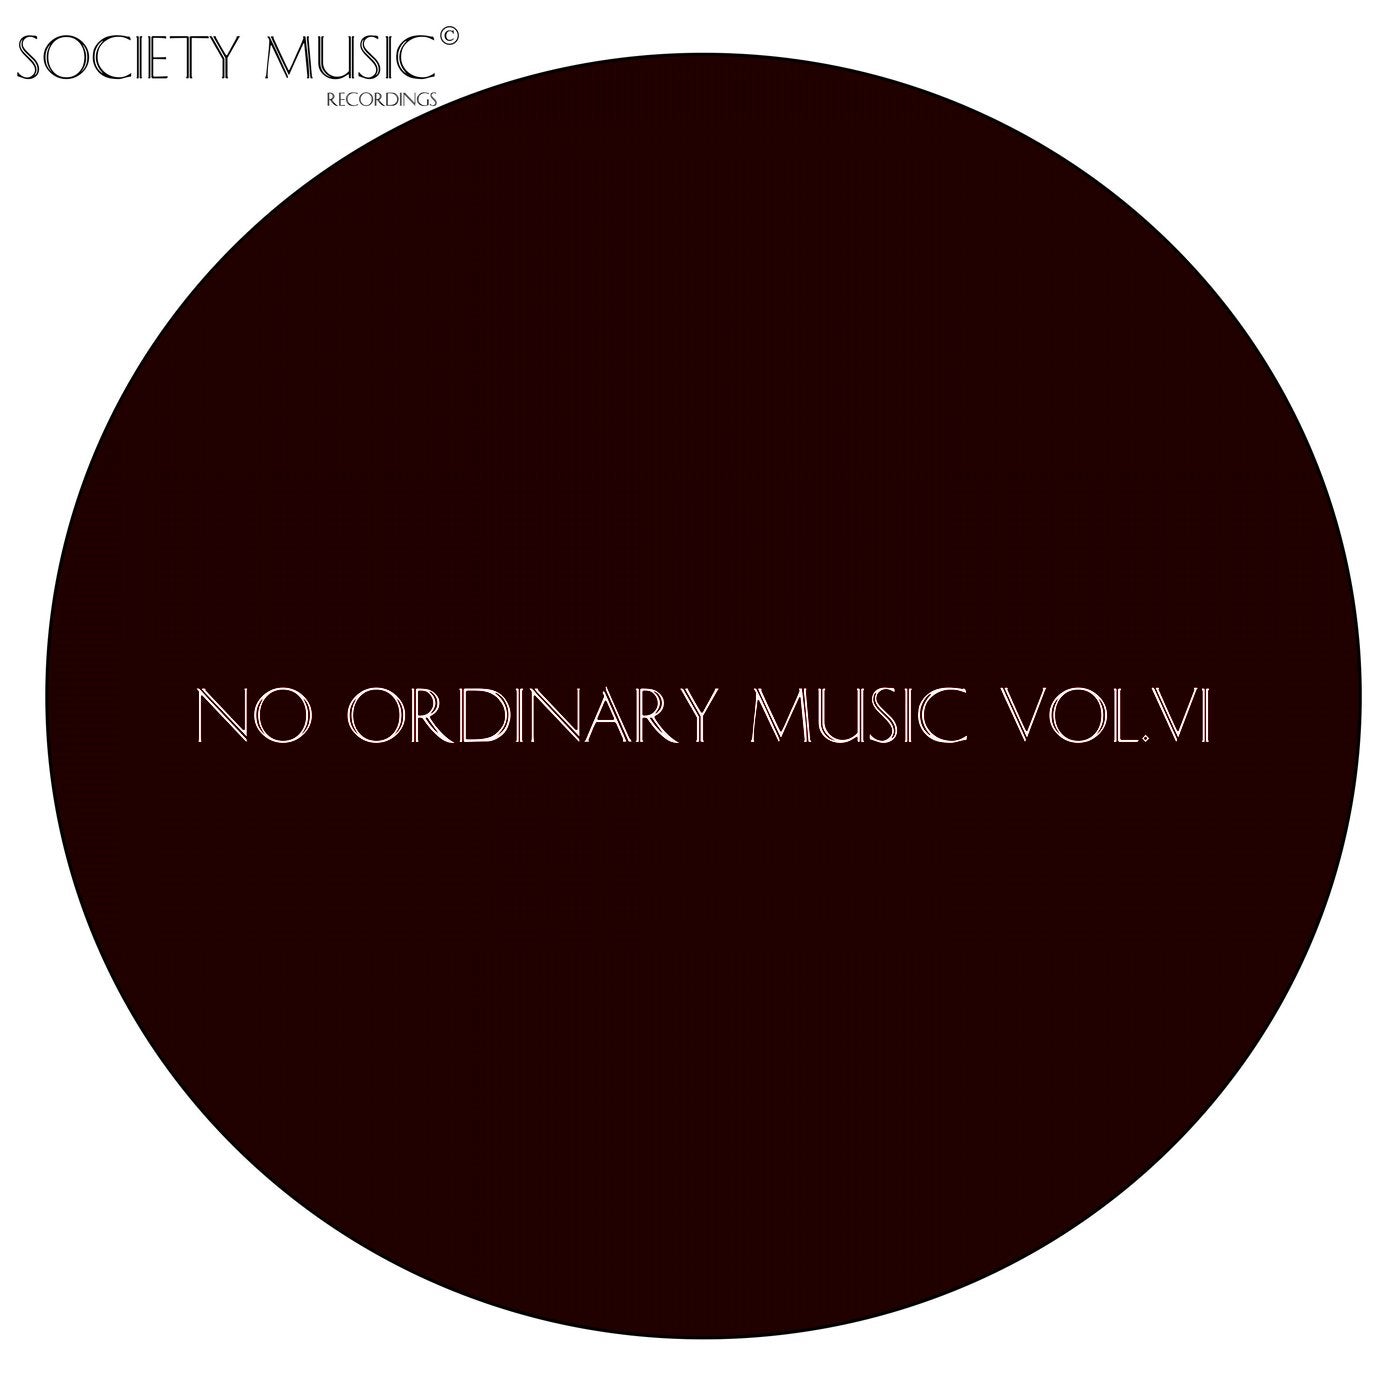 No Ordinary Music Vol.VI